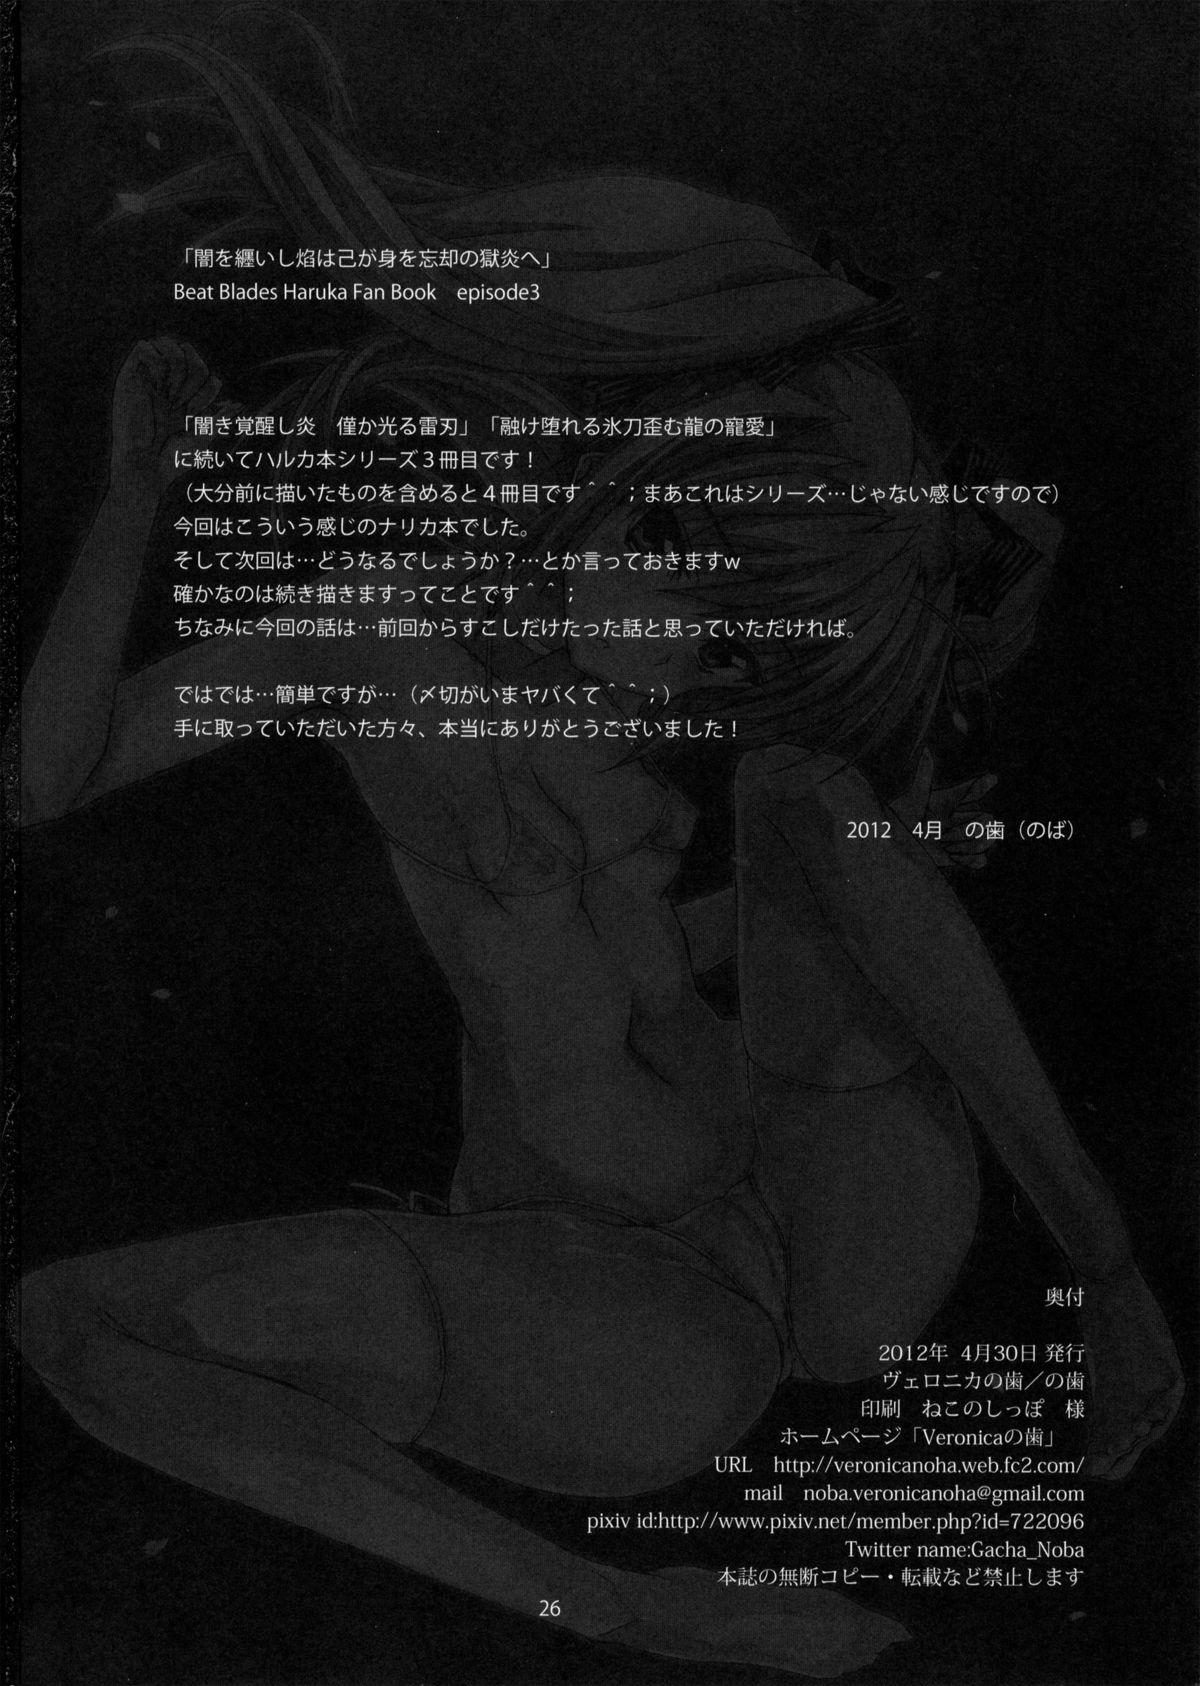 Climax Yami wo Matoishi Homura wa Ono ga Mi wo Boukyaku no Gokuen e - Beat blades haruka Women Fucking - Page 25